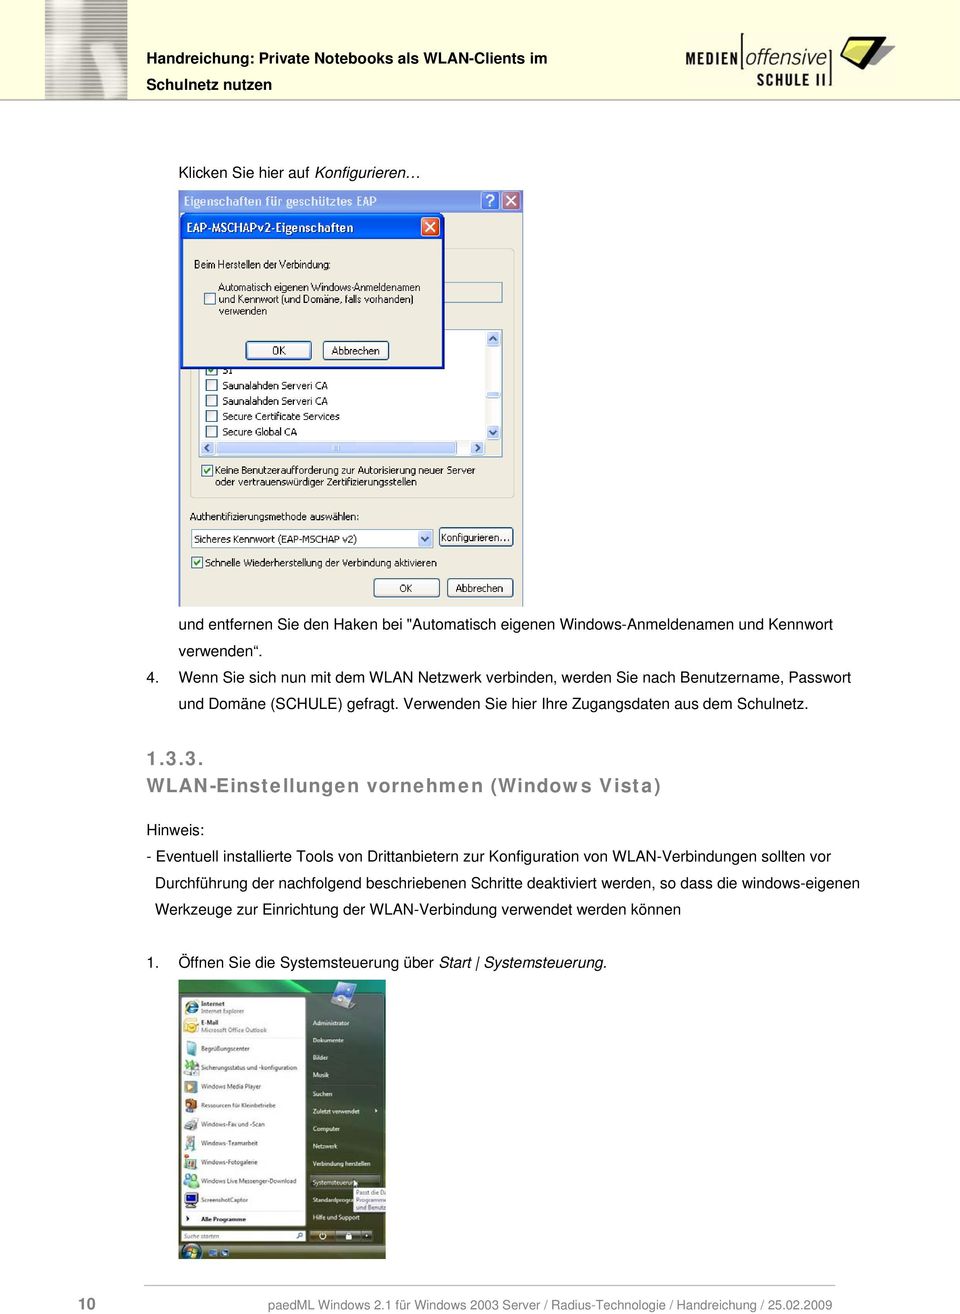 3. WLAN-Einstellungen vornehmen (Windows Vista) Hinweis: - Eventuell installierte Tools von Drittanbietern zur Konfiguration von WLAN-Verbindungen sollten vor Durchführung der nachfolgend